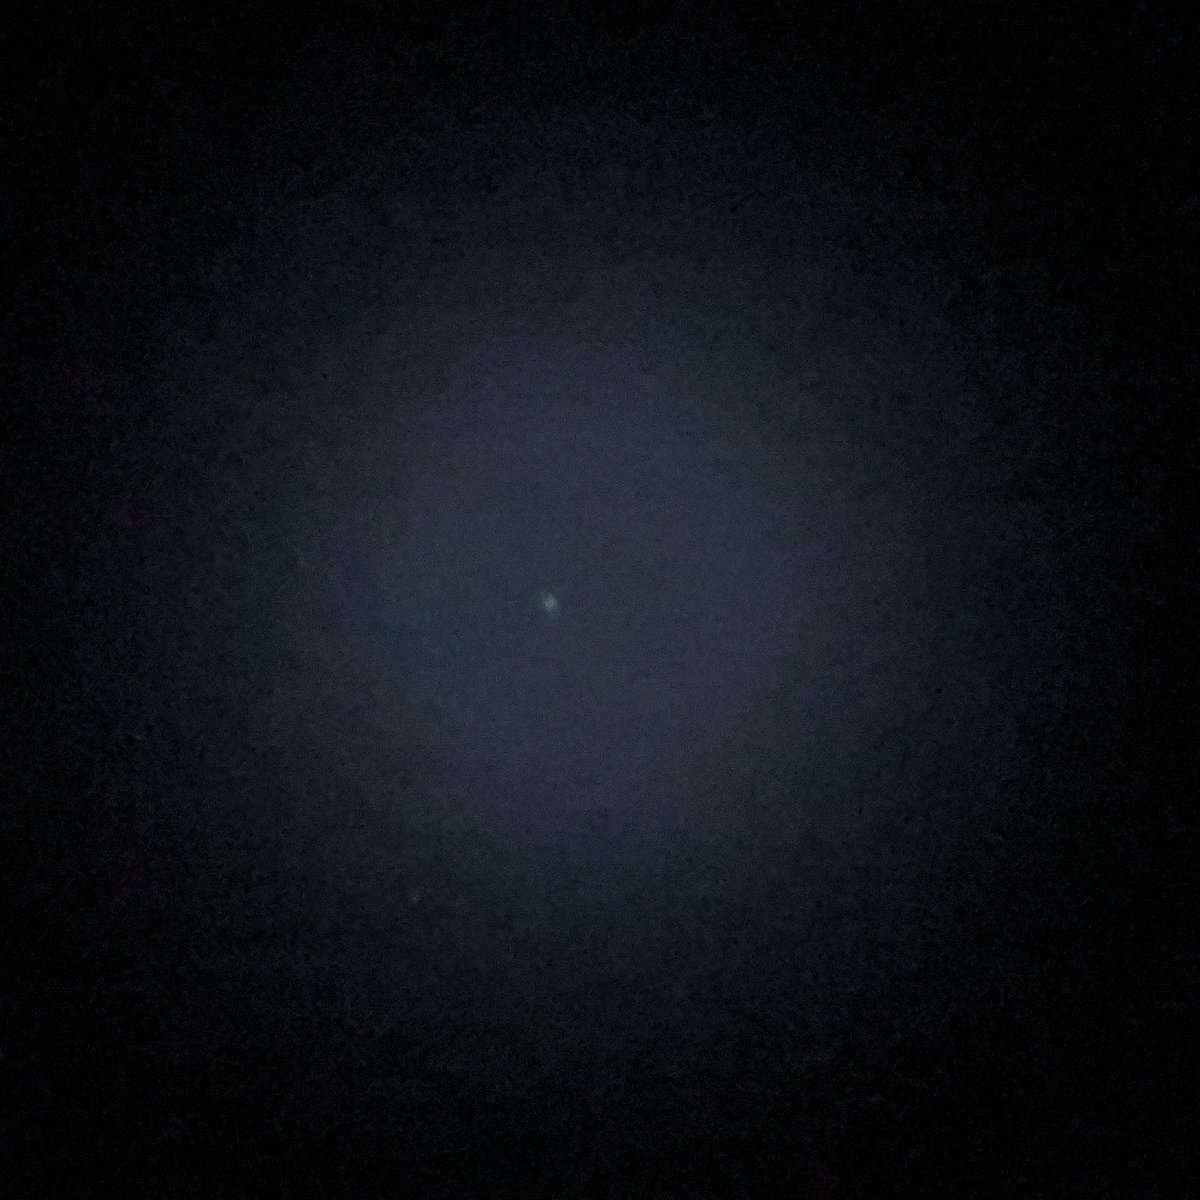 ようやくポンズ・ブルック彗星見た。

FC76
or18
iPhone13pro